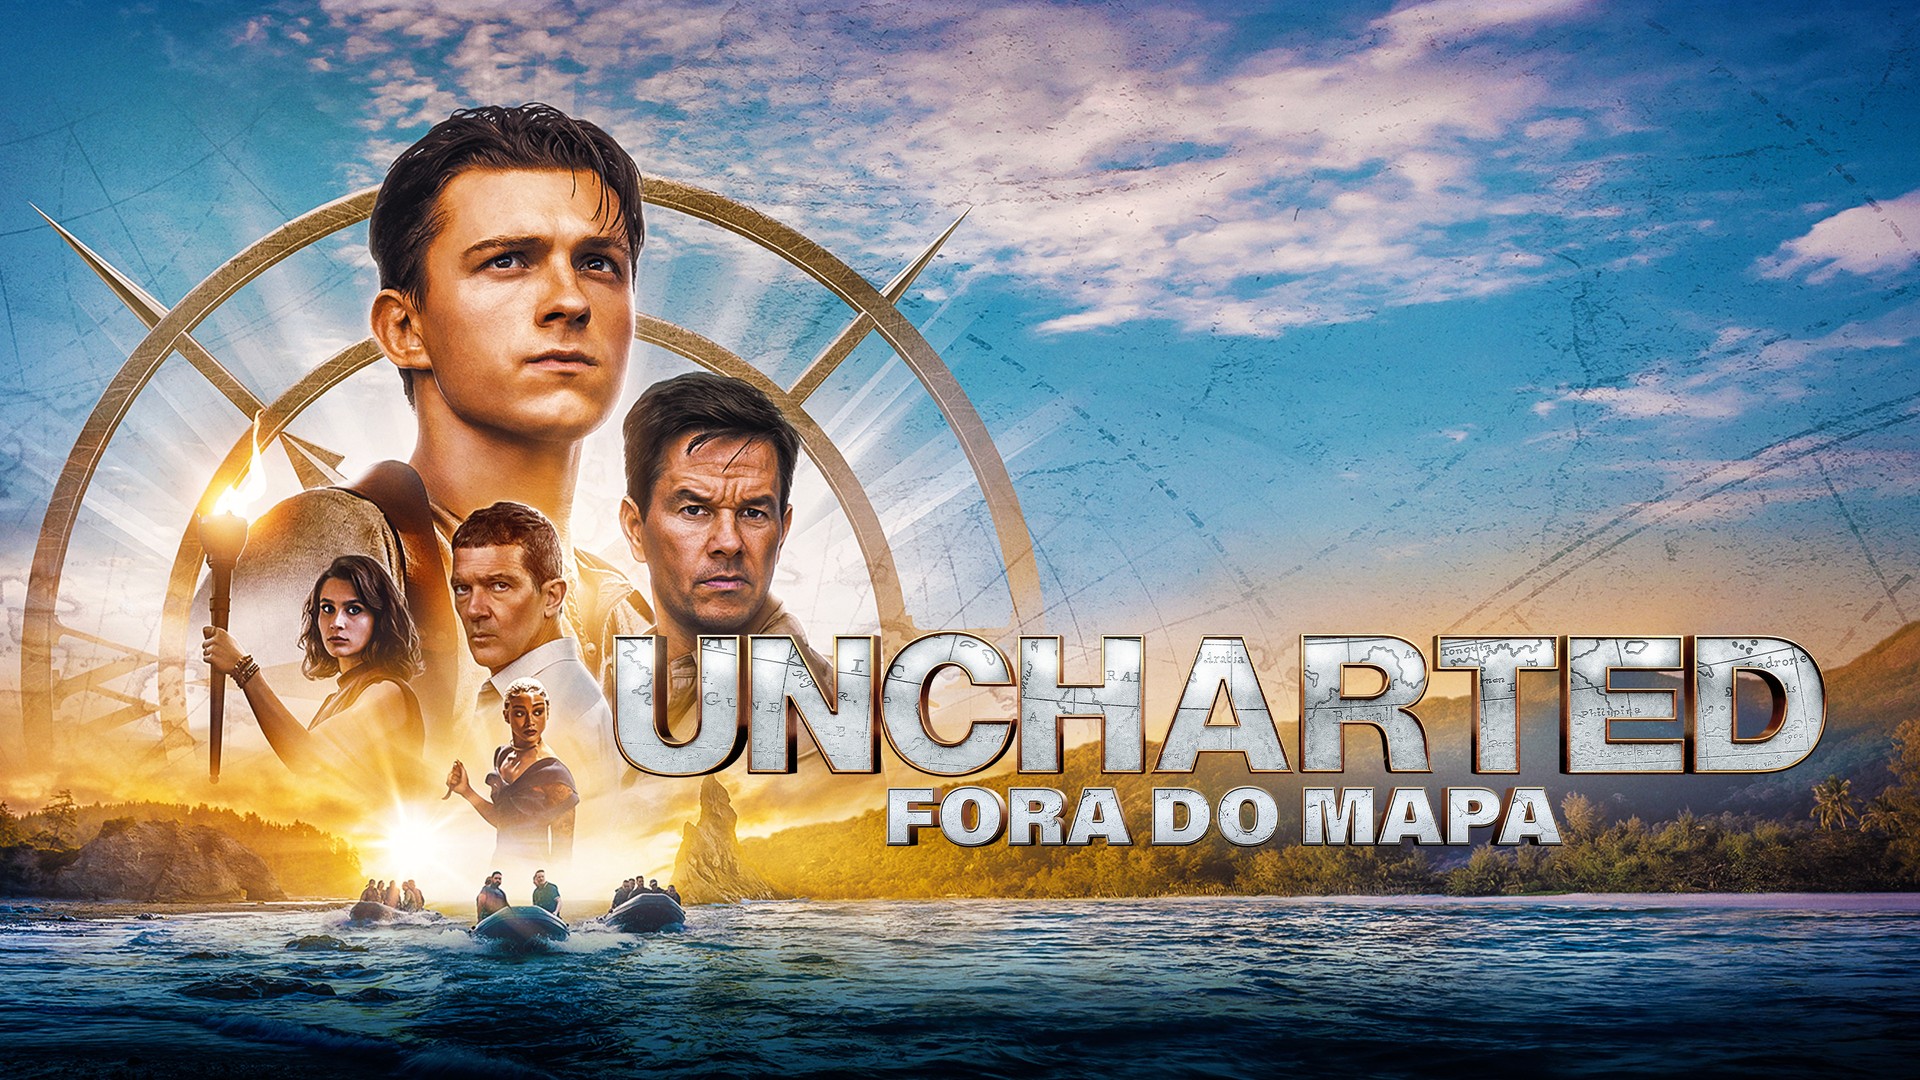 Filme de Uncharted tem nova imagem divulgada - NerdBunker